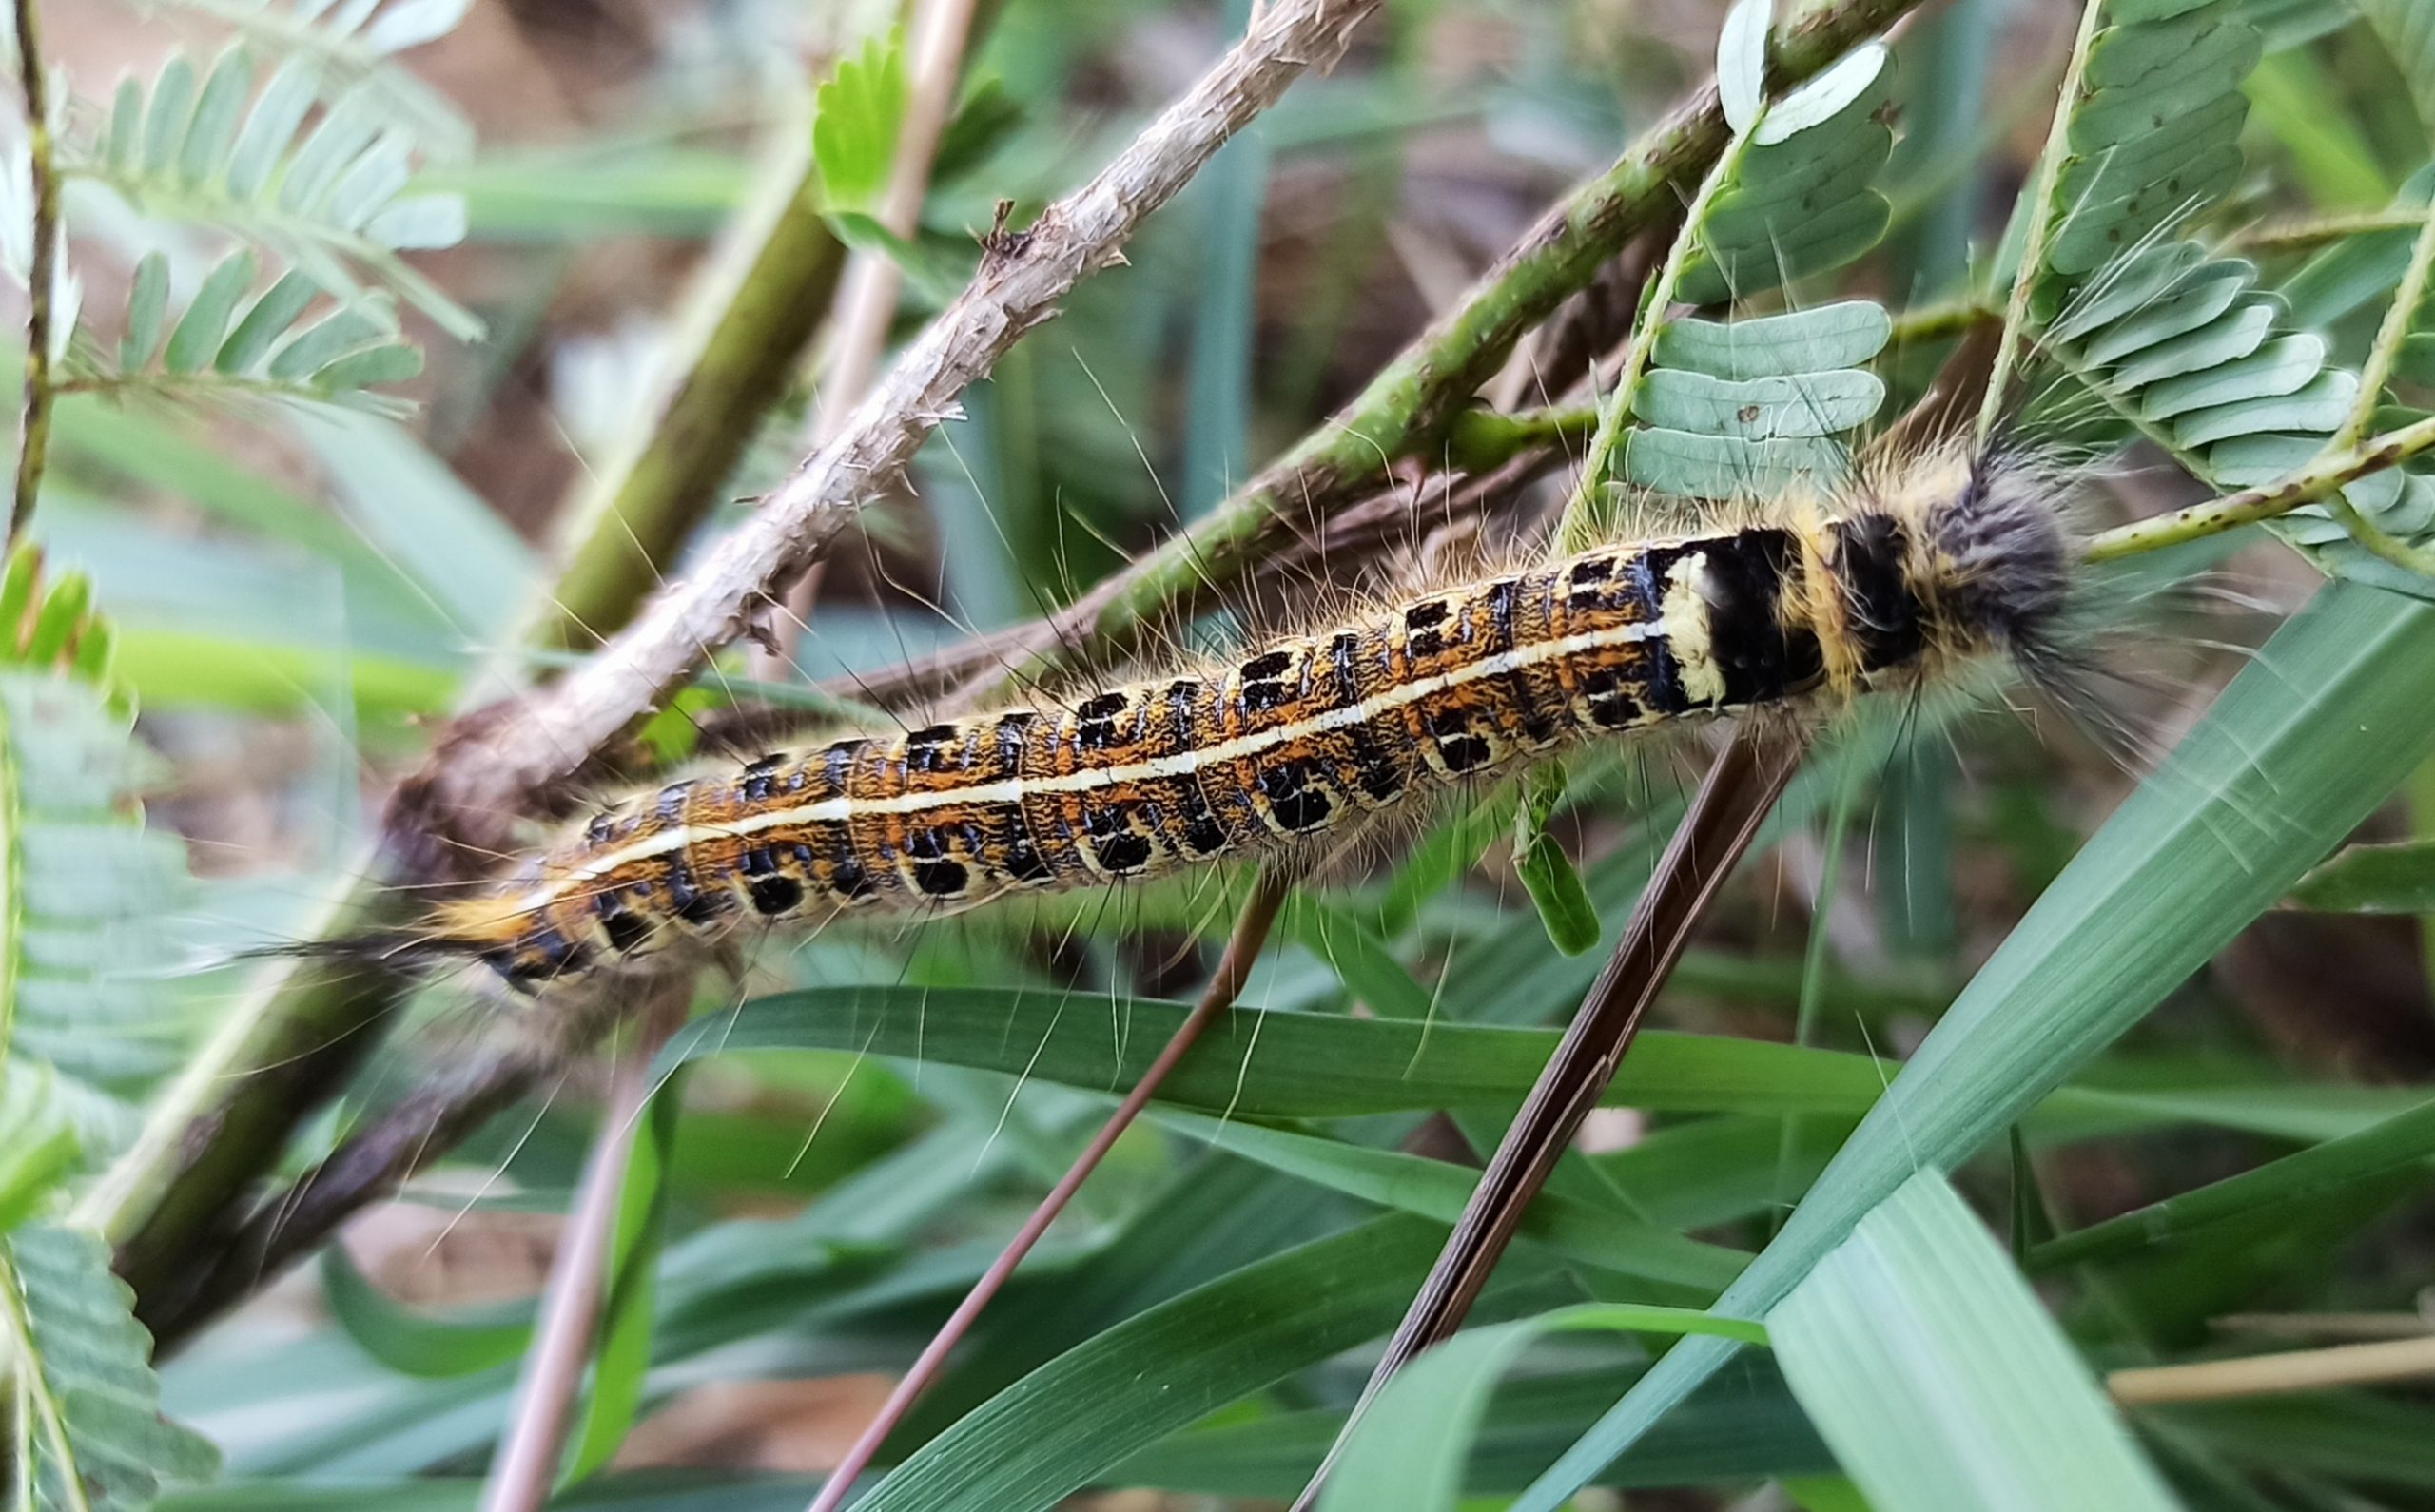 caterpillar on a stem